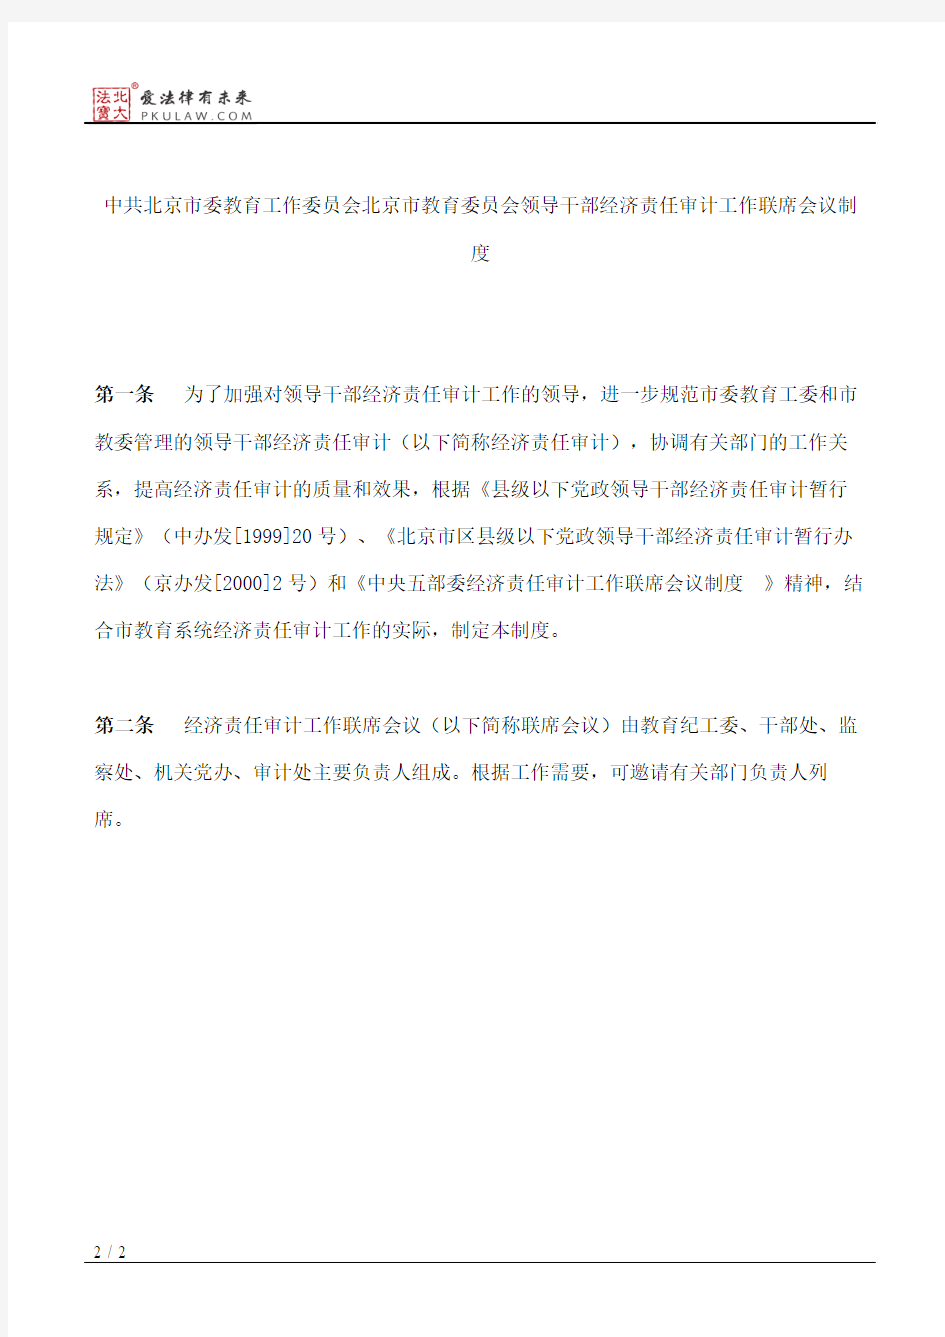 中共北京市委教育工作委员会办公室、北京市教育委员会关于印发领